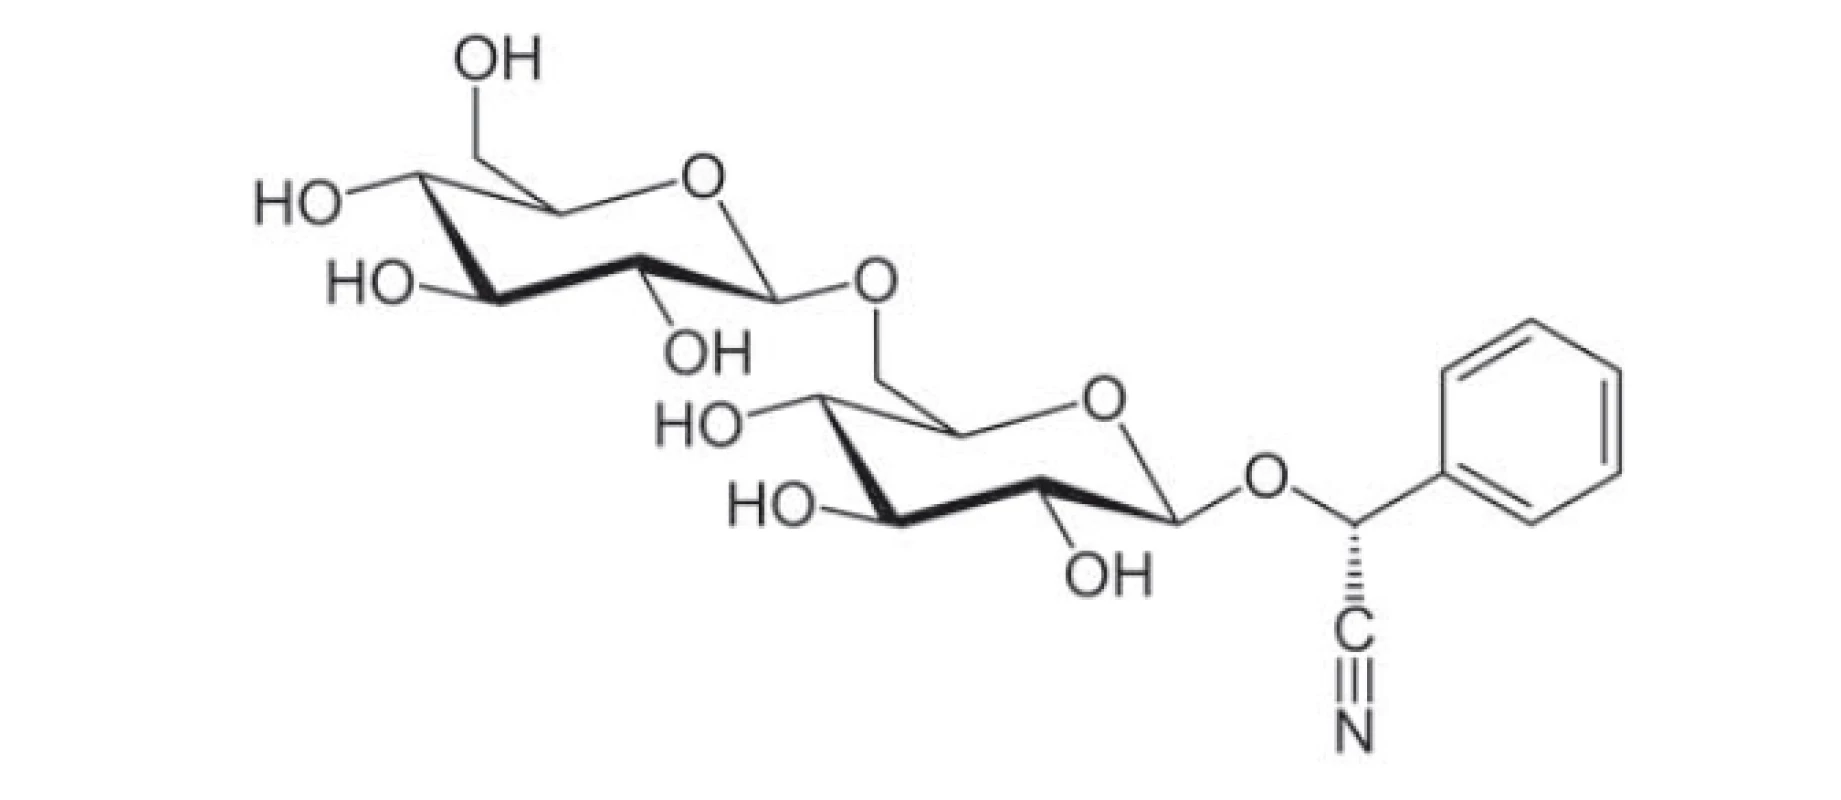 Chemická struktura amygdalinu [2].